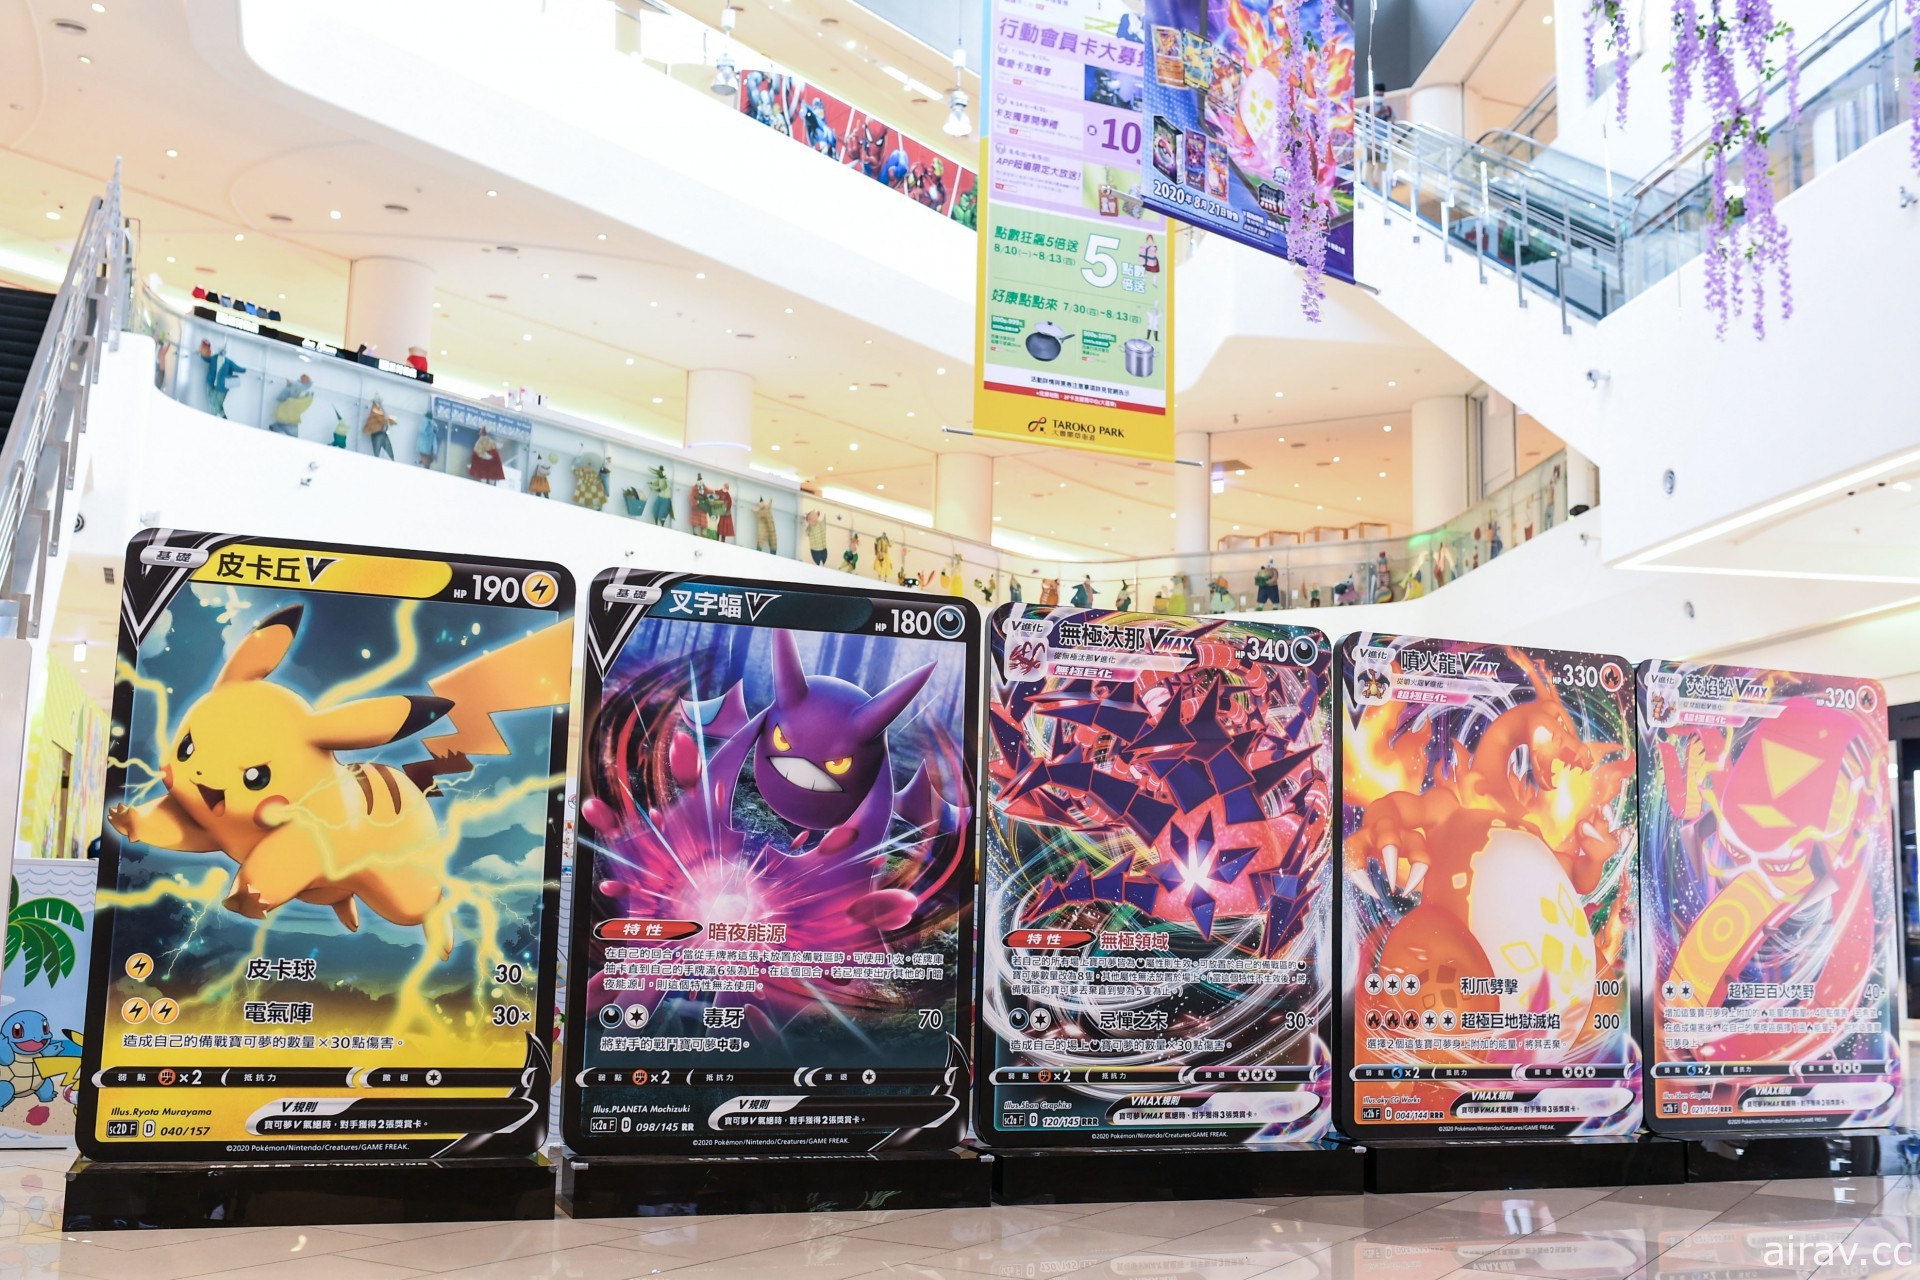 「寶可夢快閃店」即日起搶攻高雄、台中！日本 Pokémon Center 獨家販售商品曝光